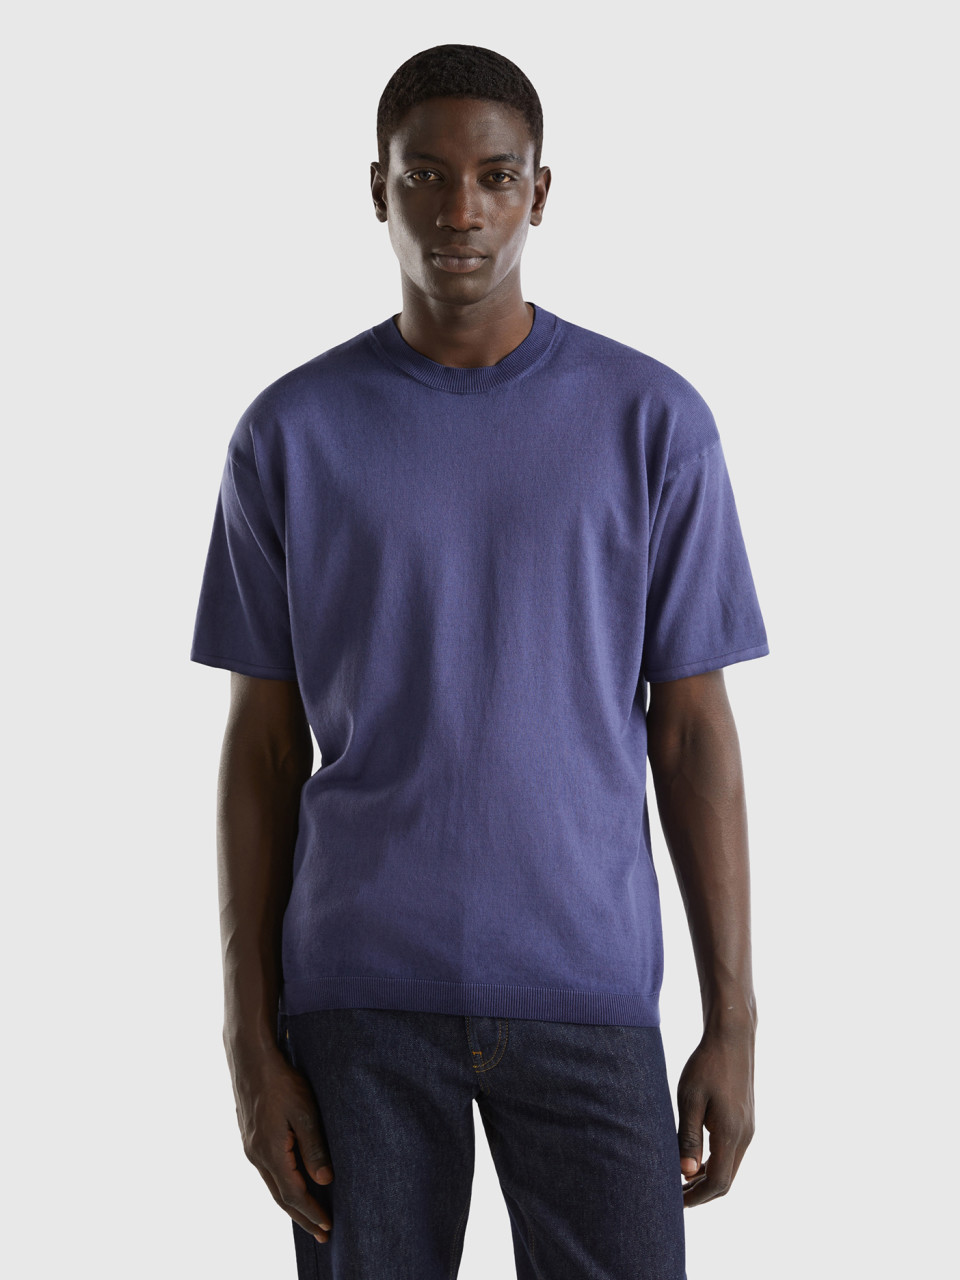 Benetton, Oversized Fit Knitted T-shirt, Dark Blue, Men